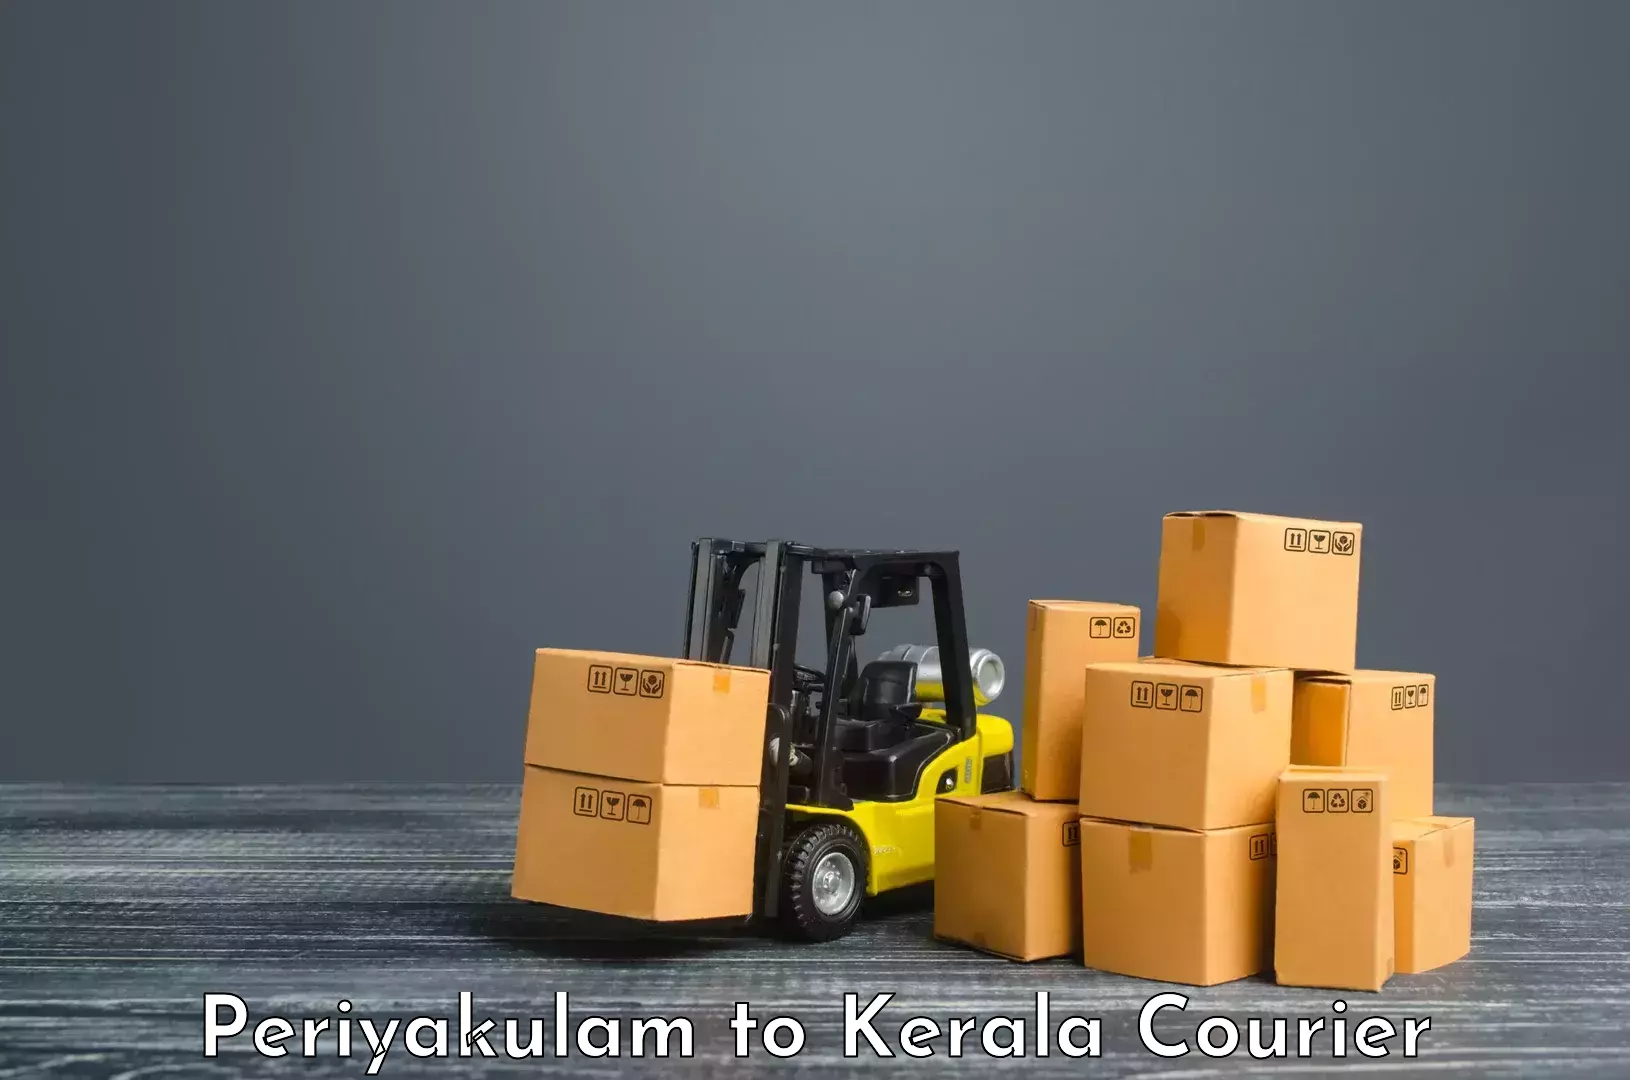 Bulk courier orders Periyakulam to Ernakulam